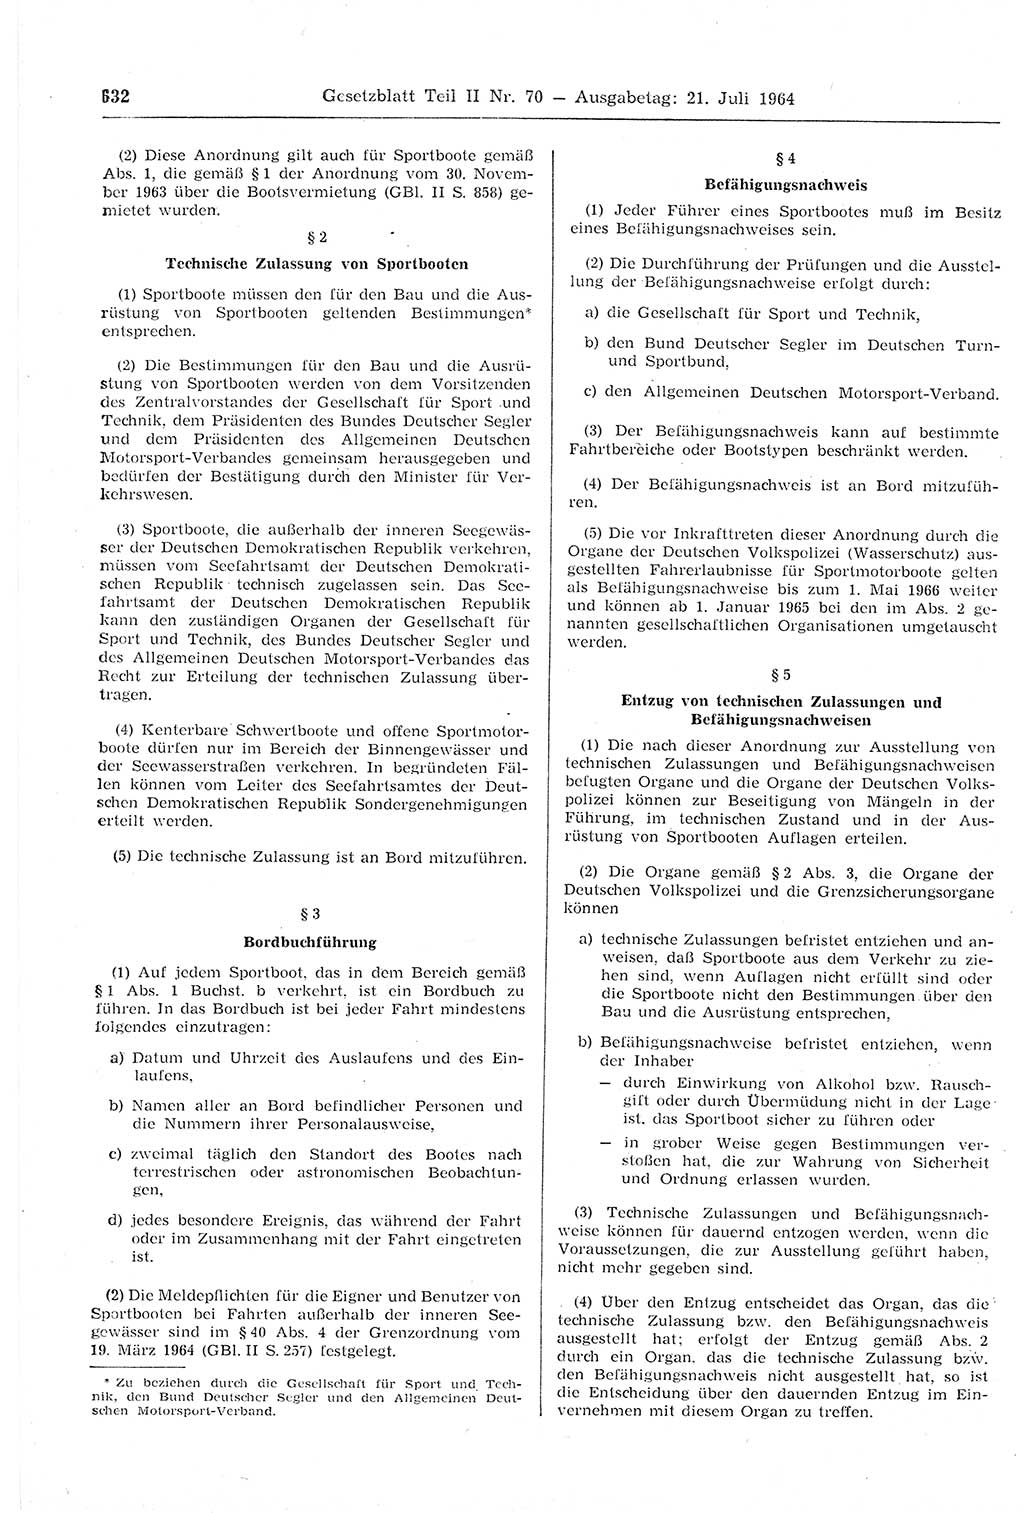 Gesetzblatt (GBl.) der Deutschen Demokratischen Republik (DDR) Teil ⅠⅠ 1964, Seite 632 (GBl. DDR ⅠⅠ 1964, S. 632)